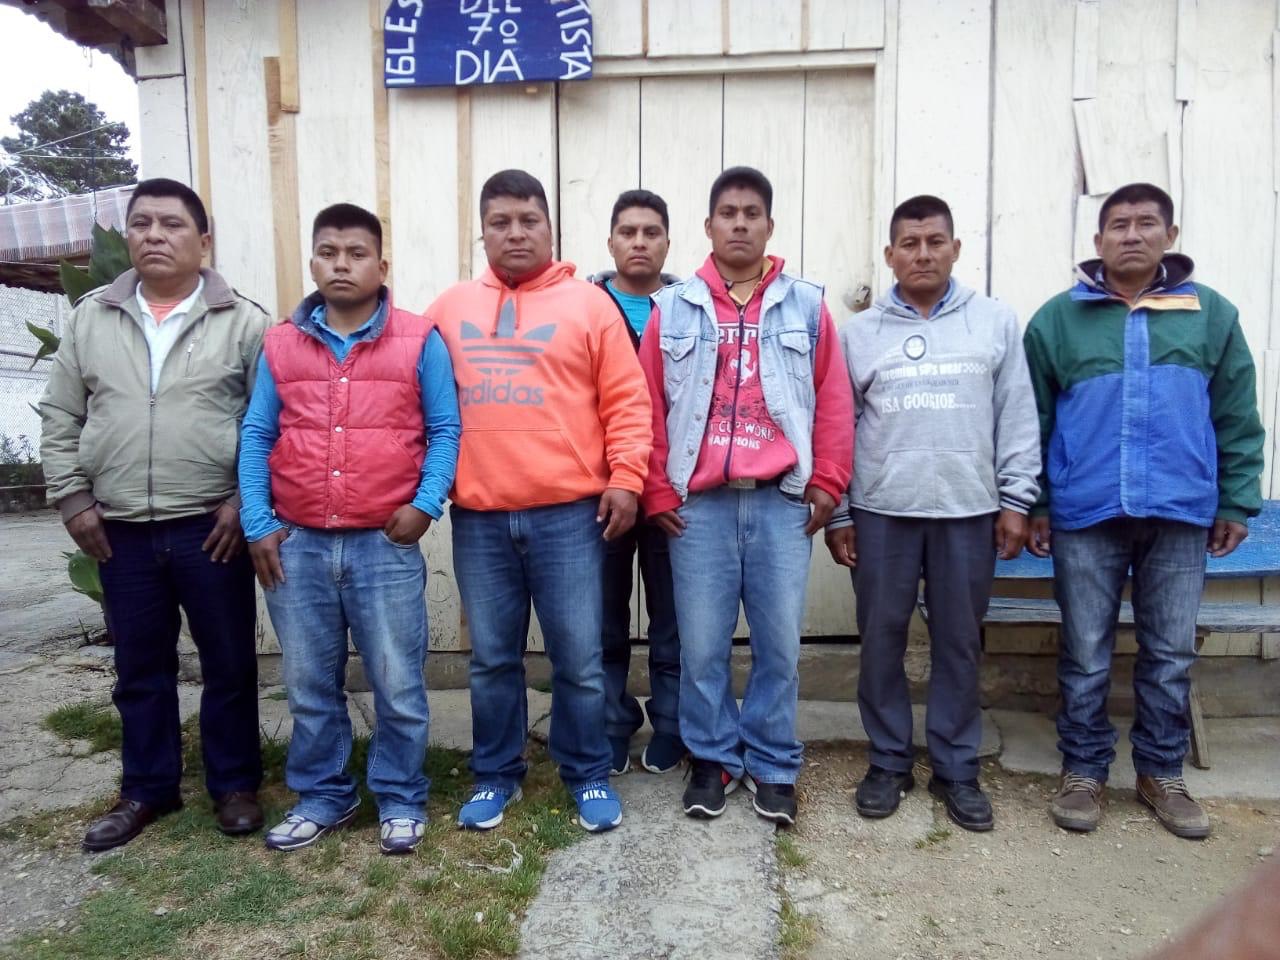 Hombres privados de la libertad en el penal de San Cristóbal de las Casas. Foto: Chiapas Paralelo